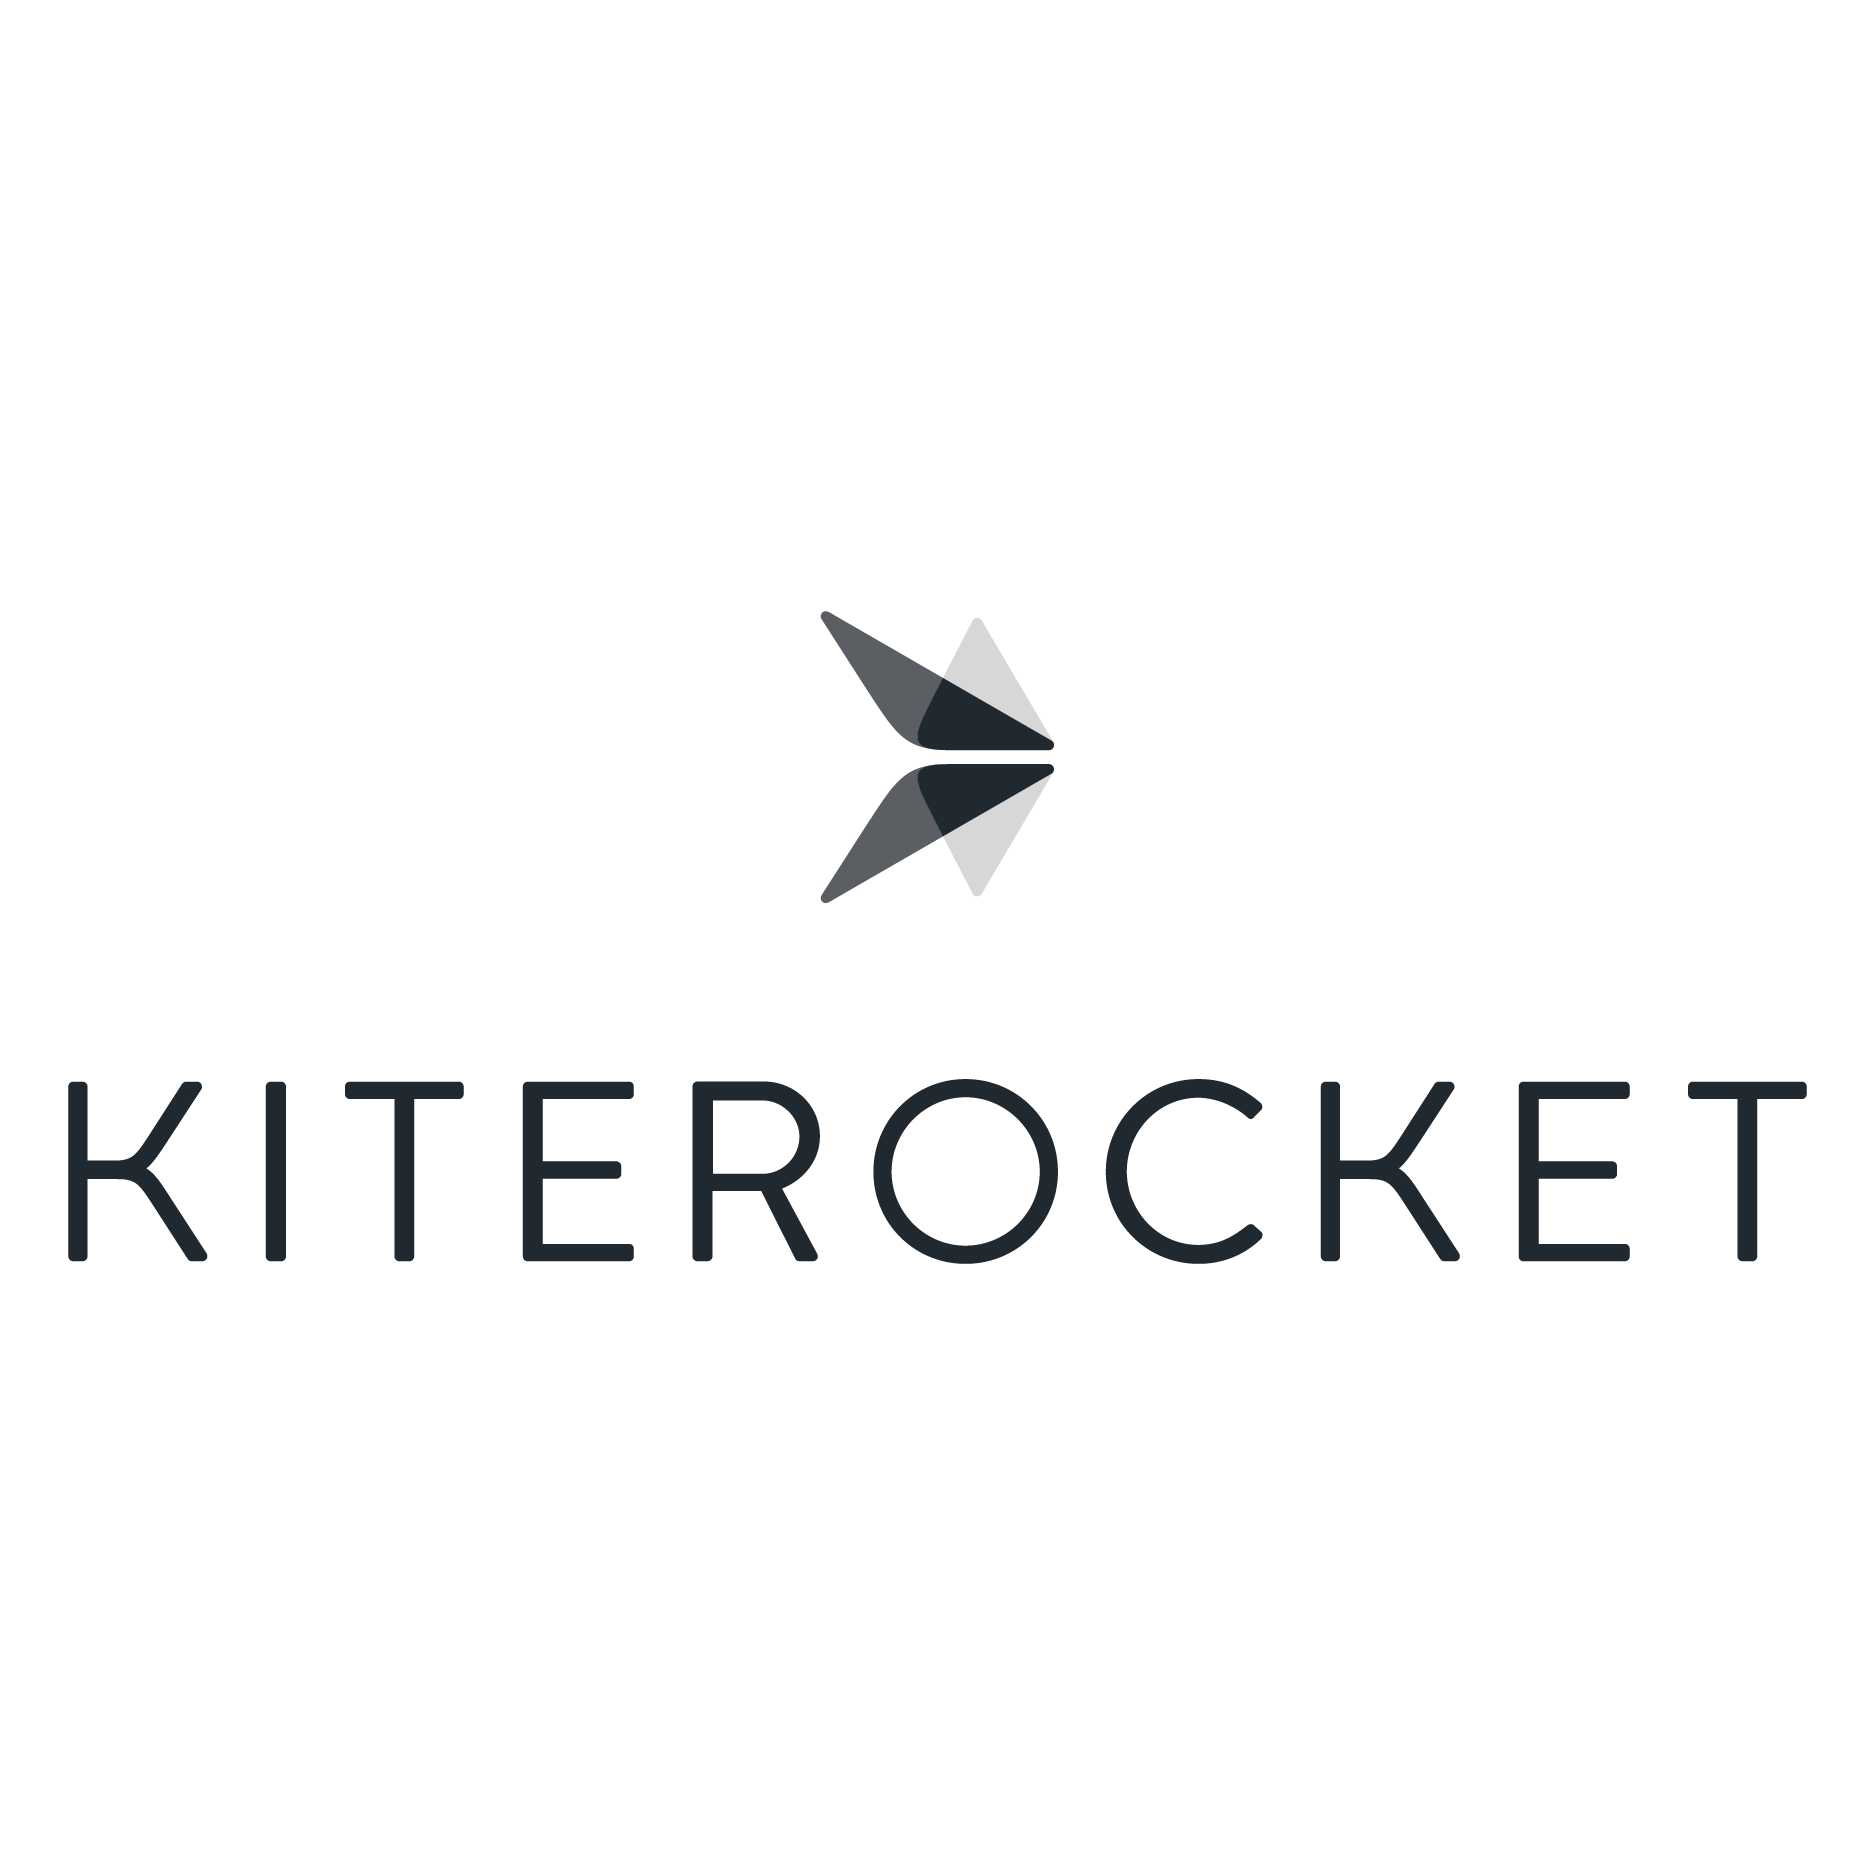 Kiterocket 